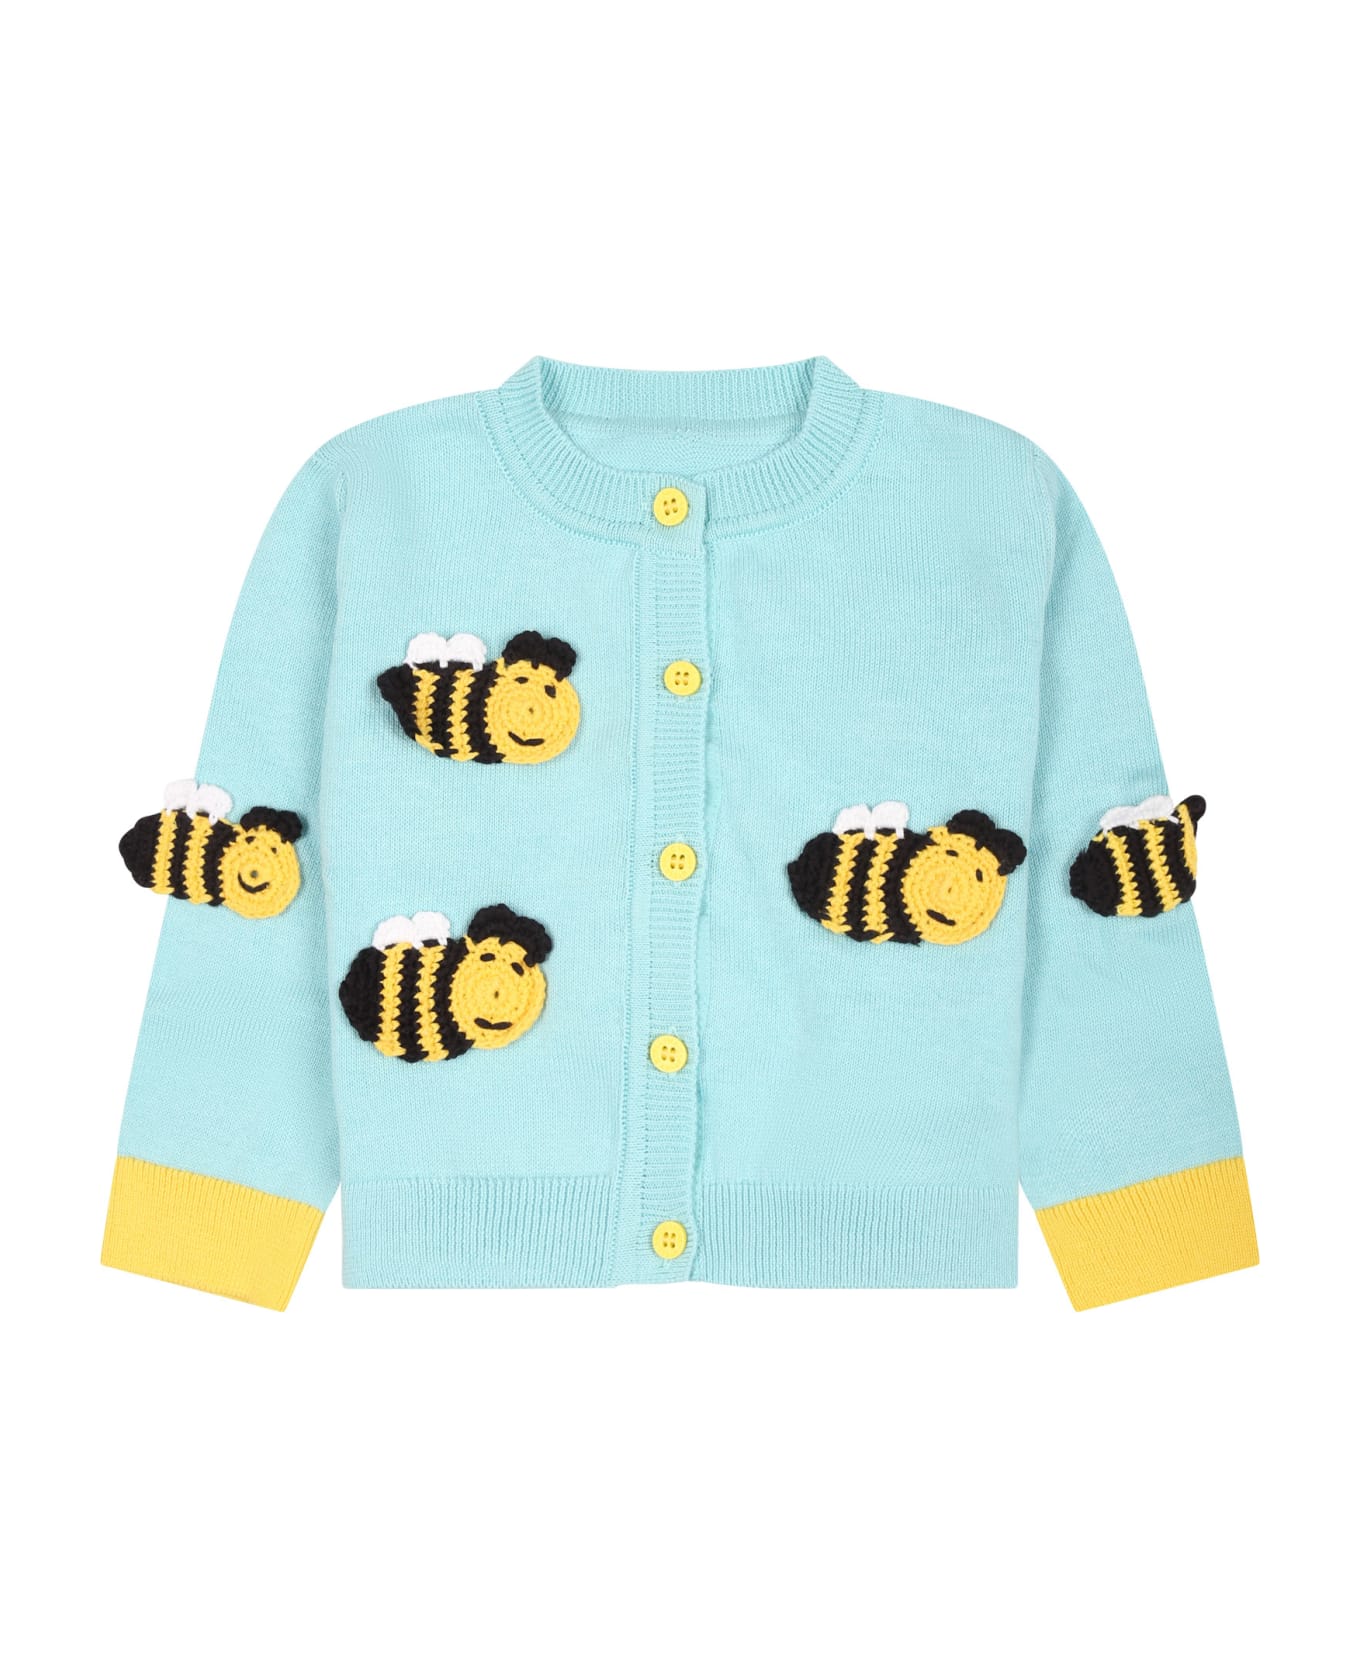 Stella McCartney Kids Light Blue Cardigan For Baby Girl With Bees - Light blue ニットウェア＆スウェットシャツ